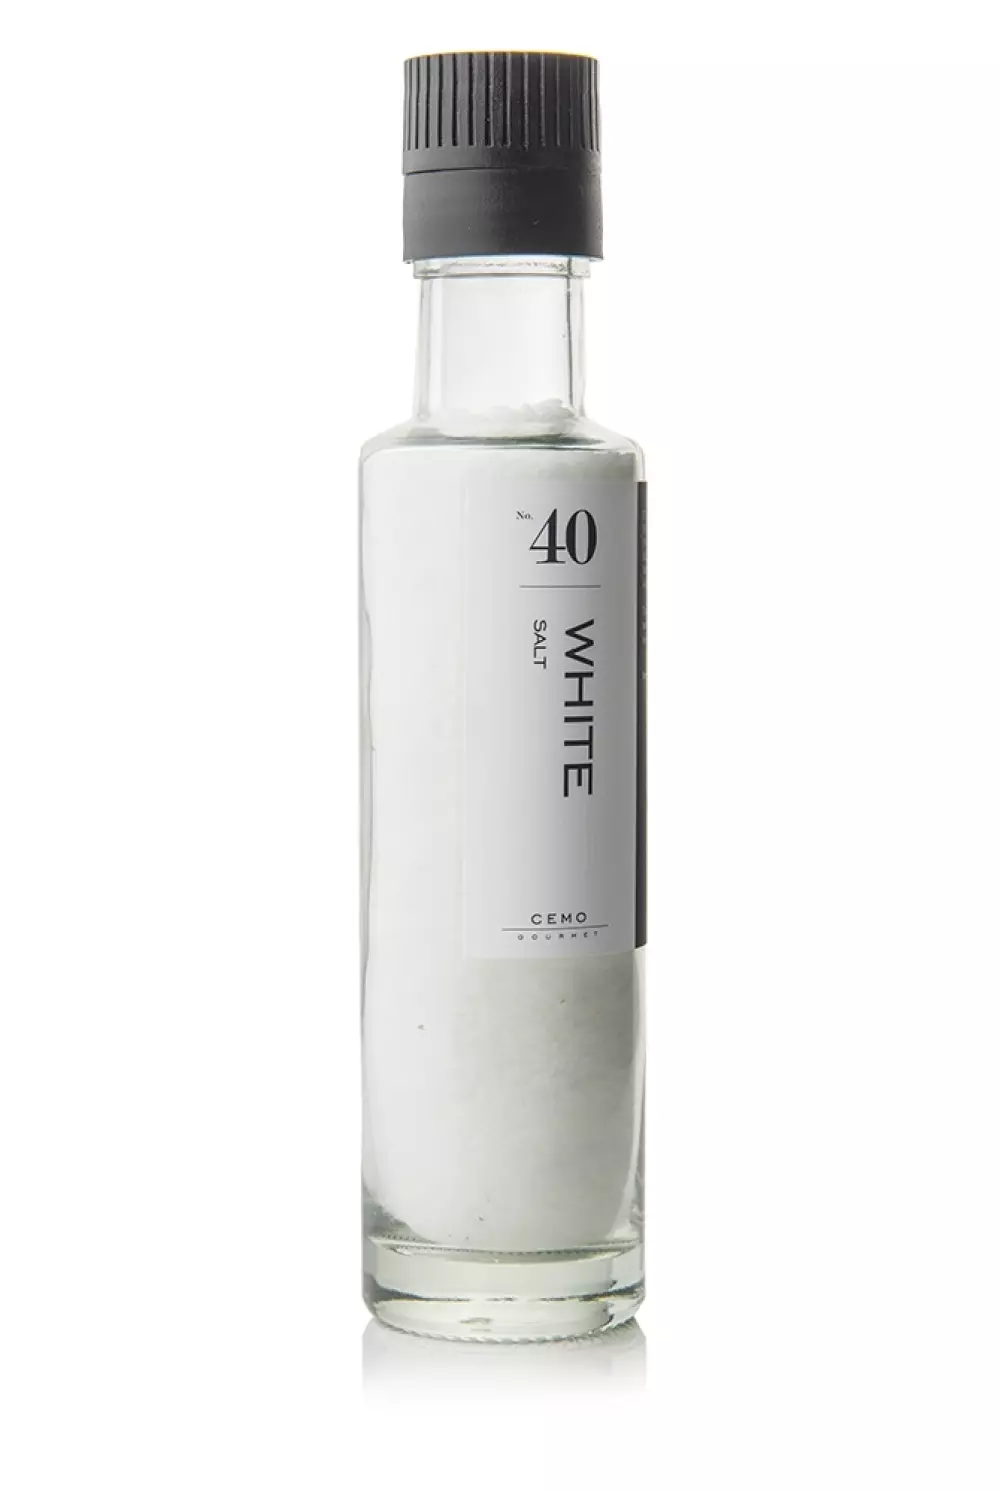 Krydderkvern White salt, 7072719000094, 2140, Matvarer, Krydder, Cemo